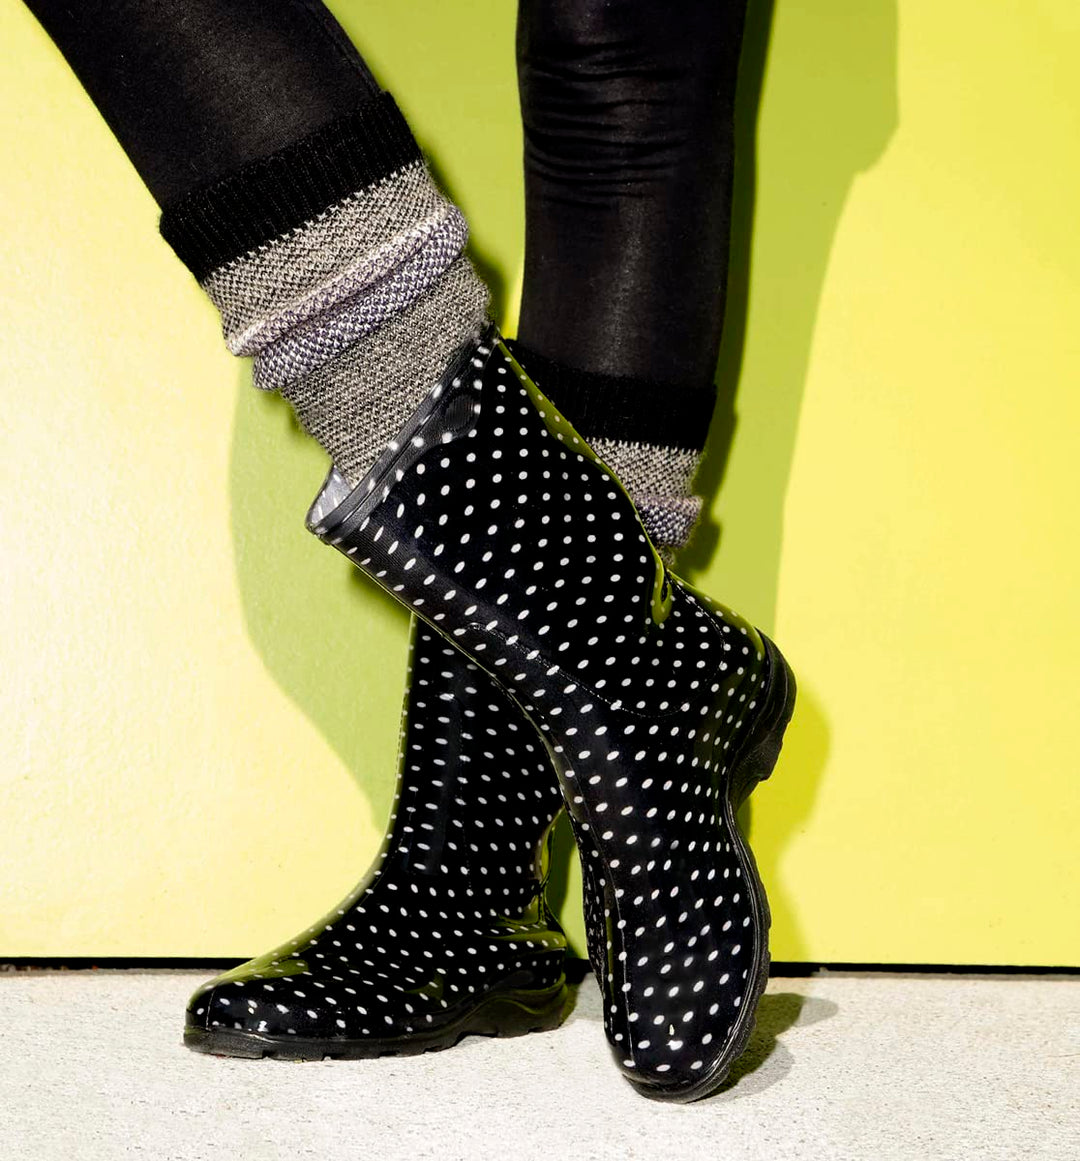 Sloggers Waterproof Garden Rain Boots for Women -(Polka Dot Black), (Size 9)